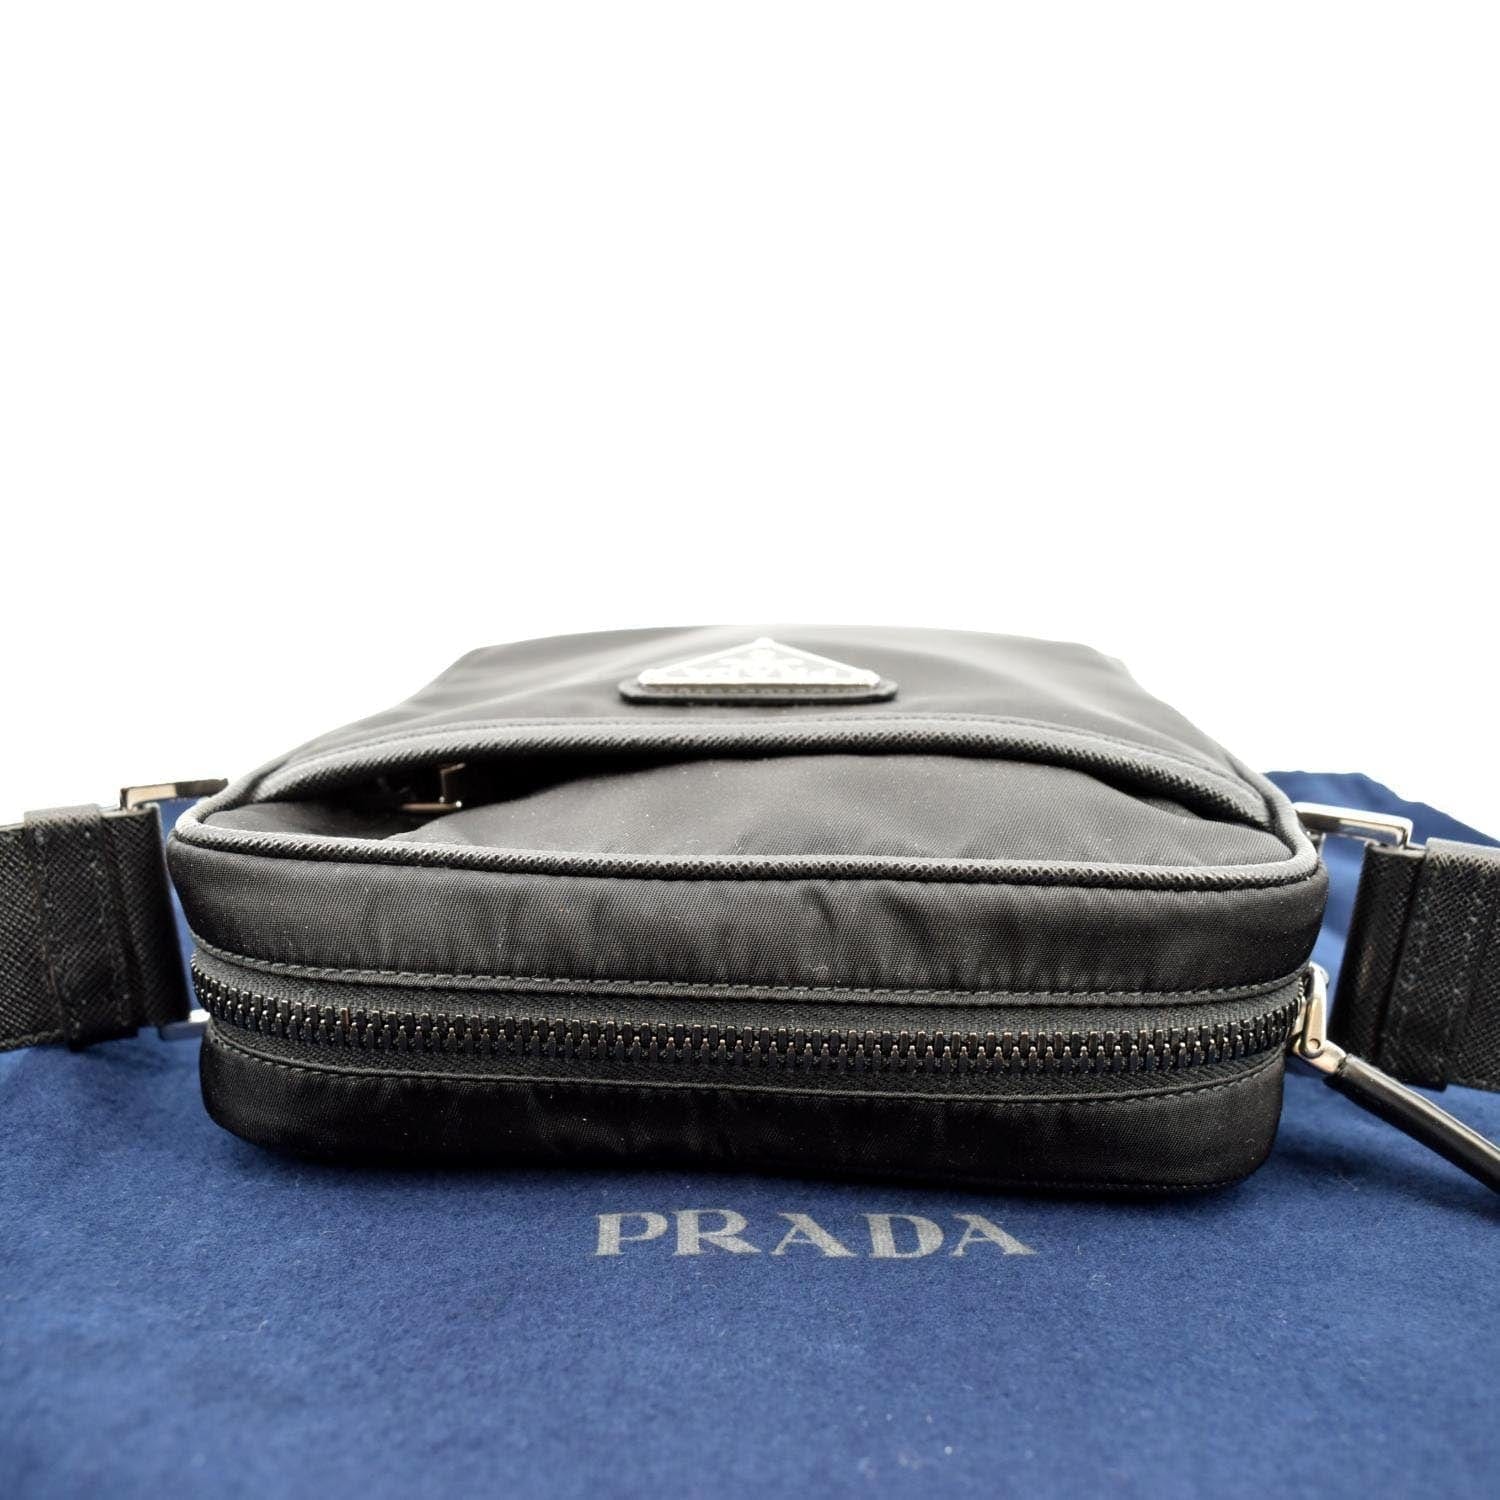 prada nylon and saffiano leather mini bag